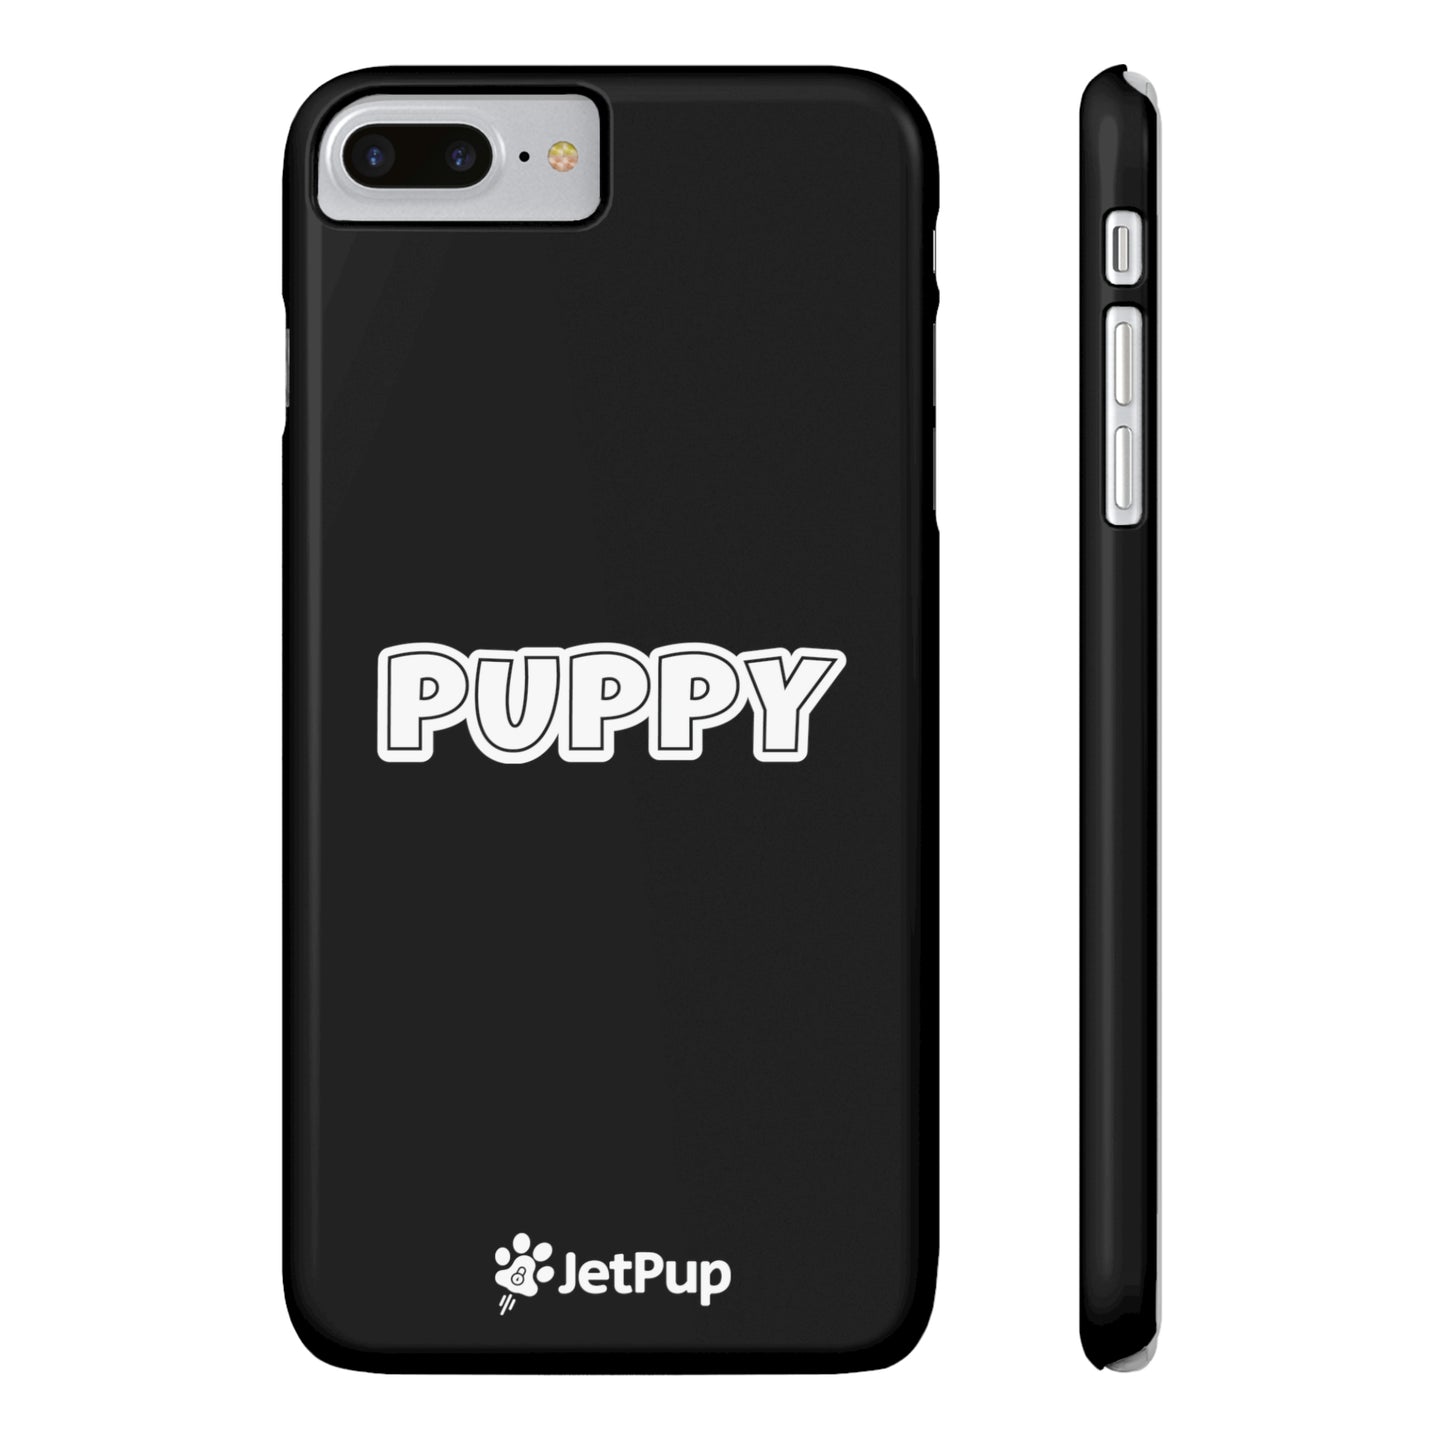 Puppy Slim iPhone Cases - Black